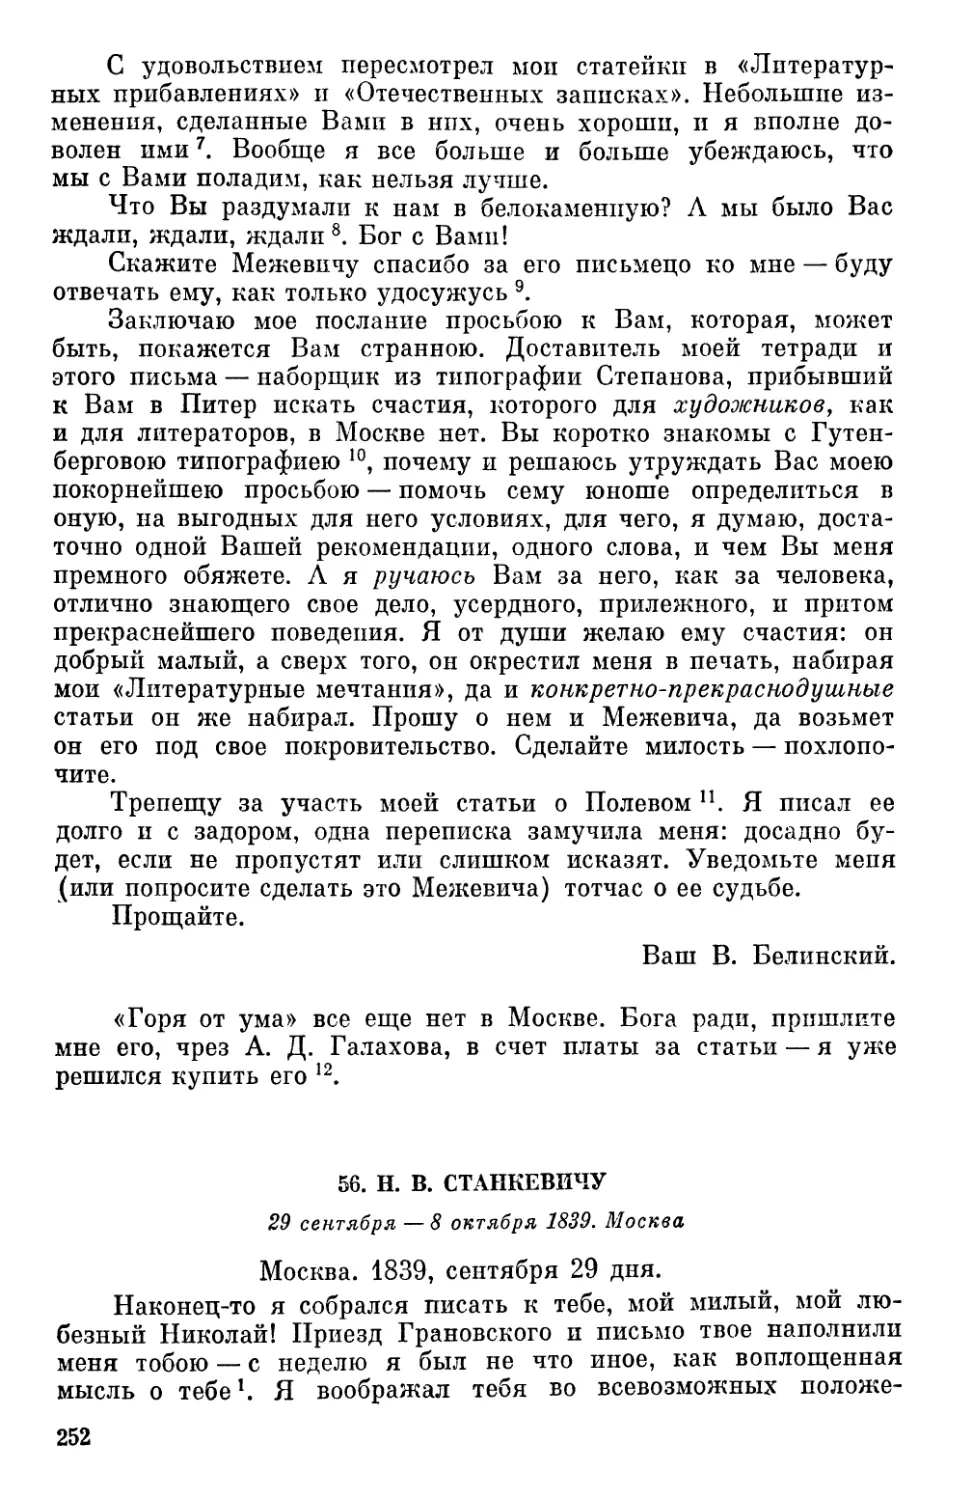 56. Н. В. Станкевичу. 29 сентября — 8 октября 1839